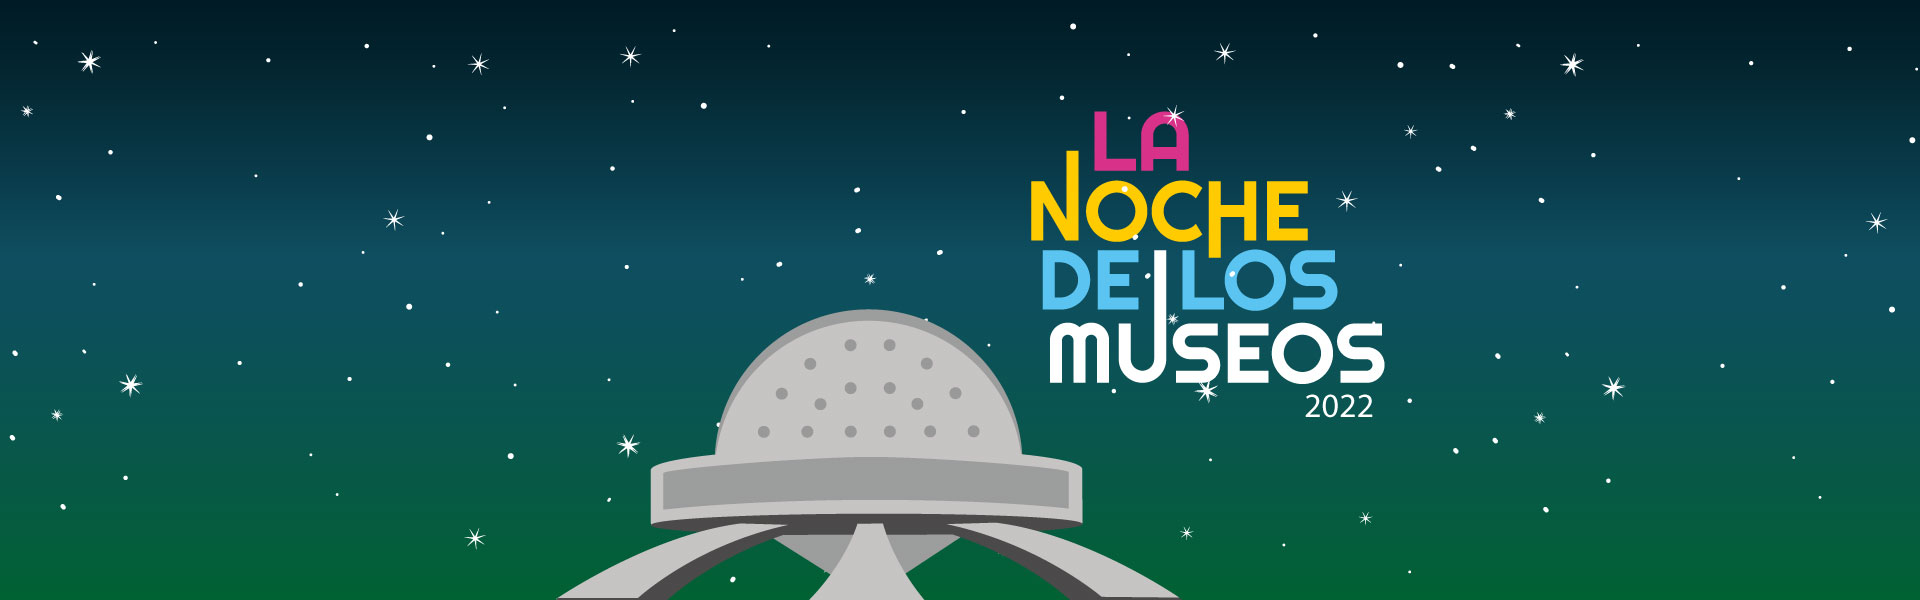 Noche de los Museos 